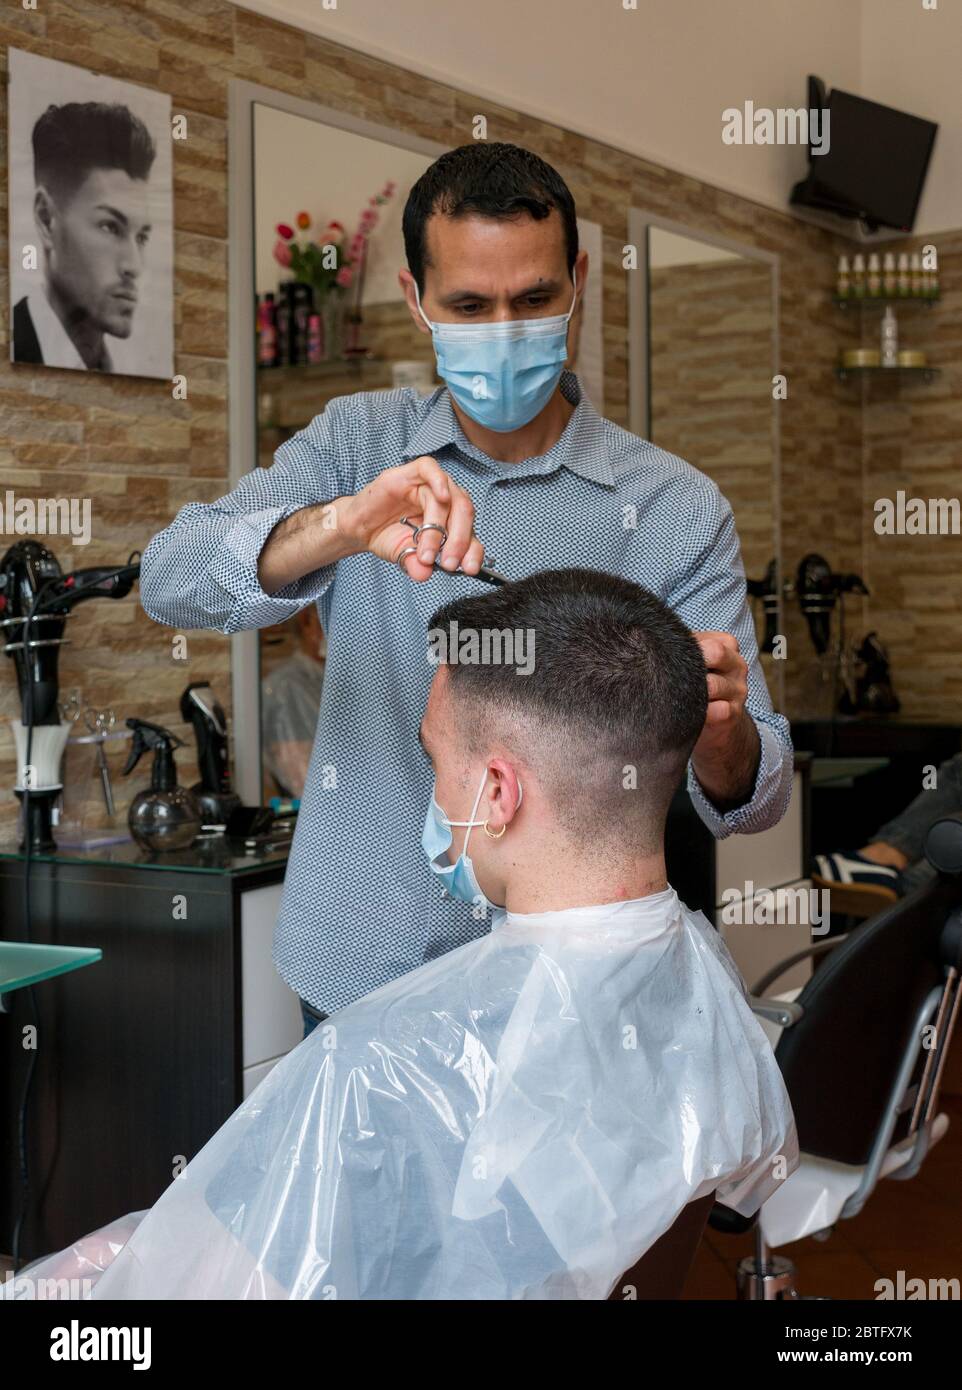 Firenze, Italia - 2020 maggio 18: Il ragazzo al barbiere si ottiene un taglio di capelli indossando la maschera protettiva, durante il blocco Covid-19. Foto Stock